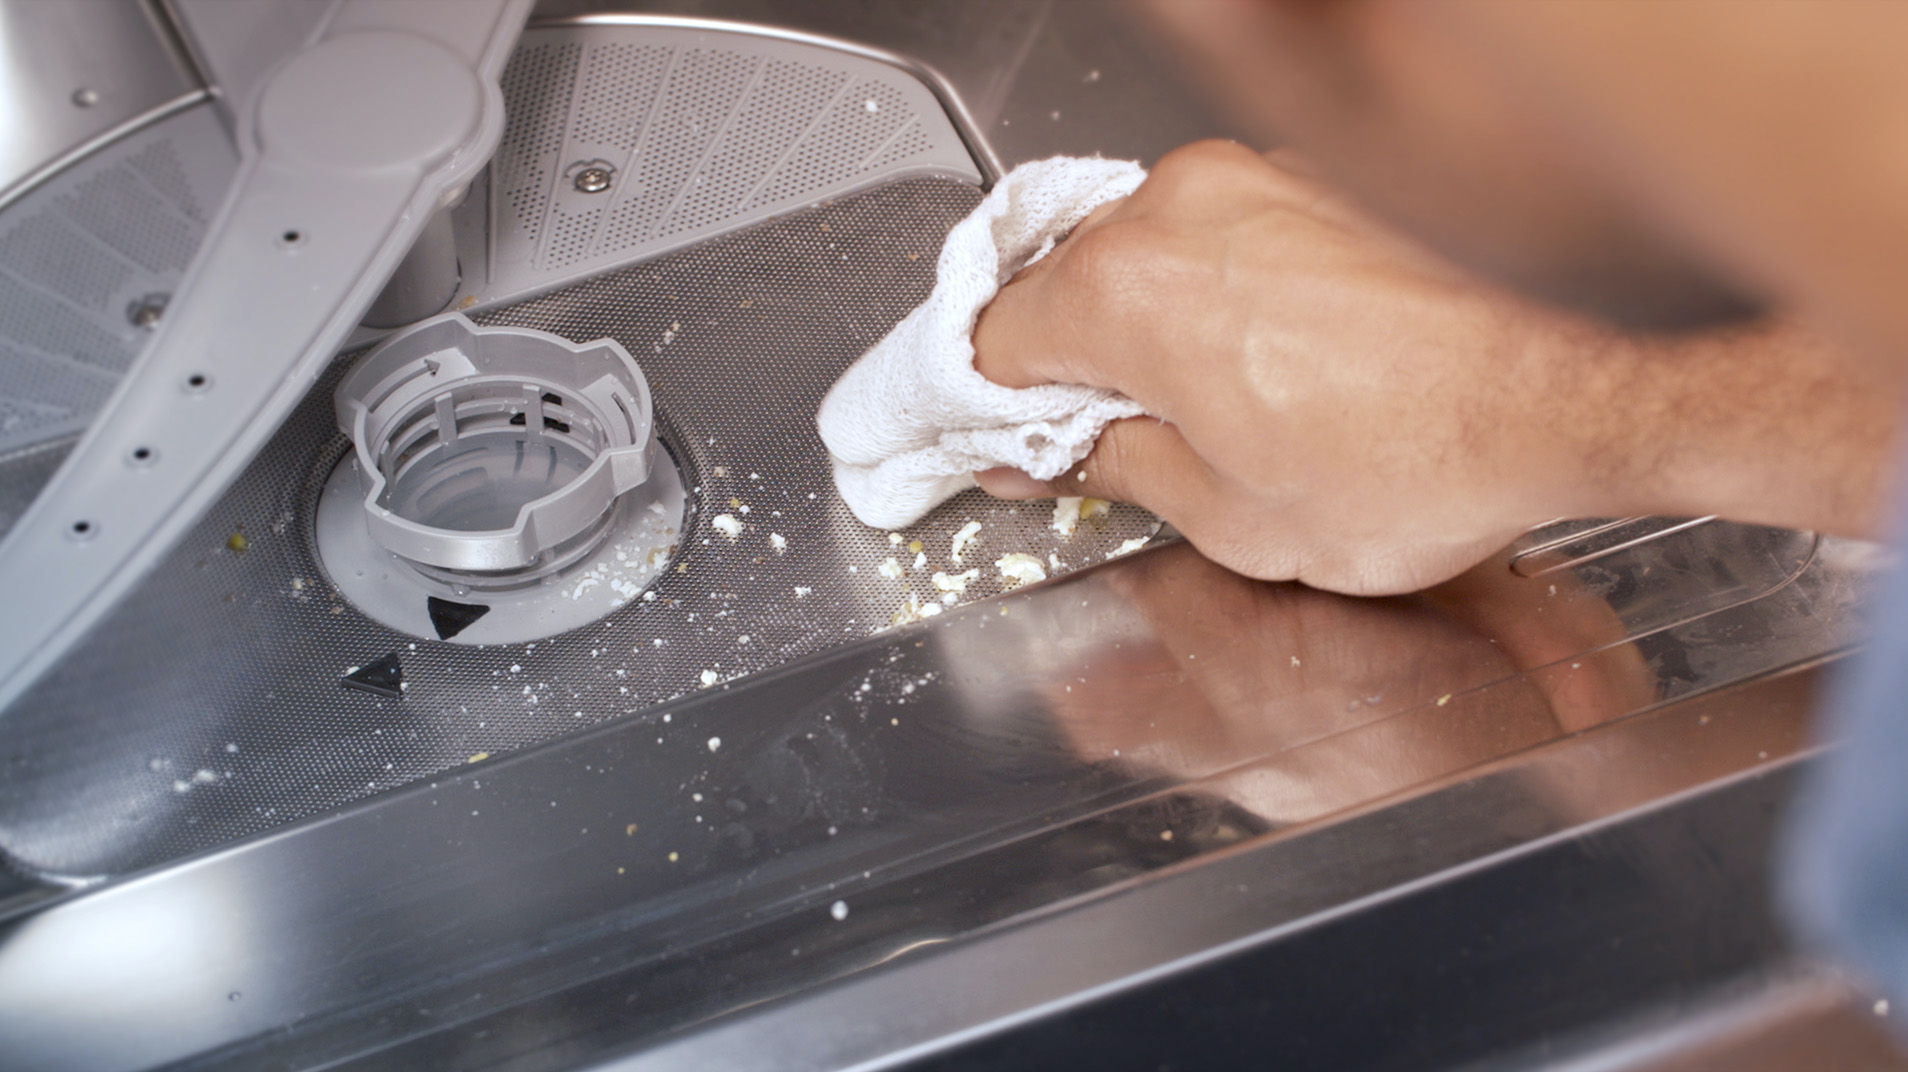 Можно ли залить средство для прочистки труб в посудомоечную машину